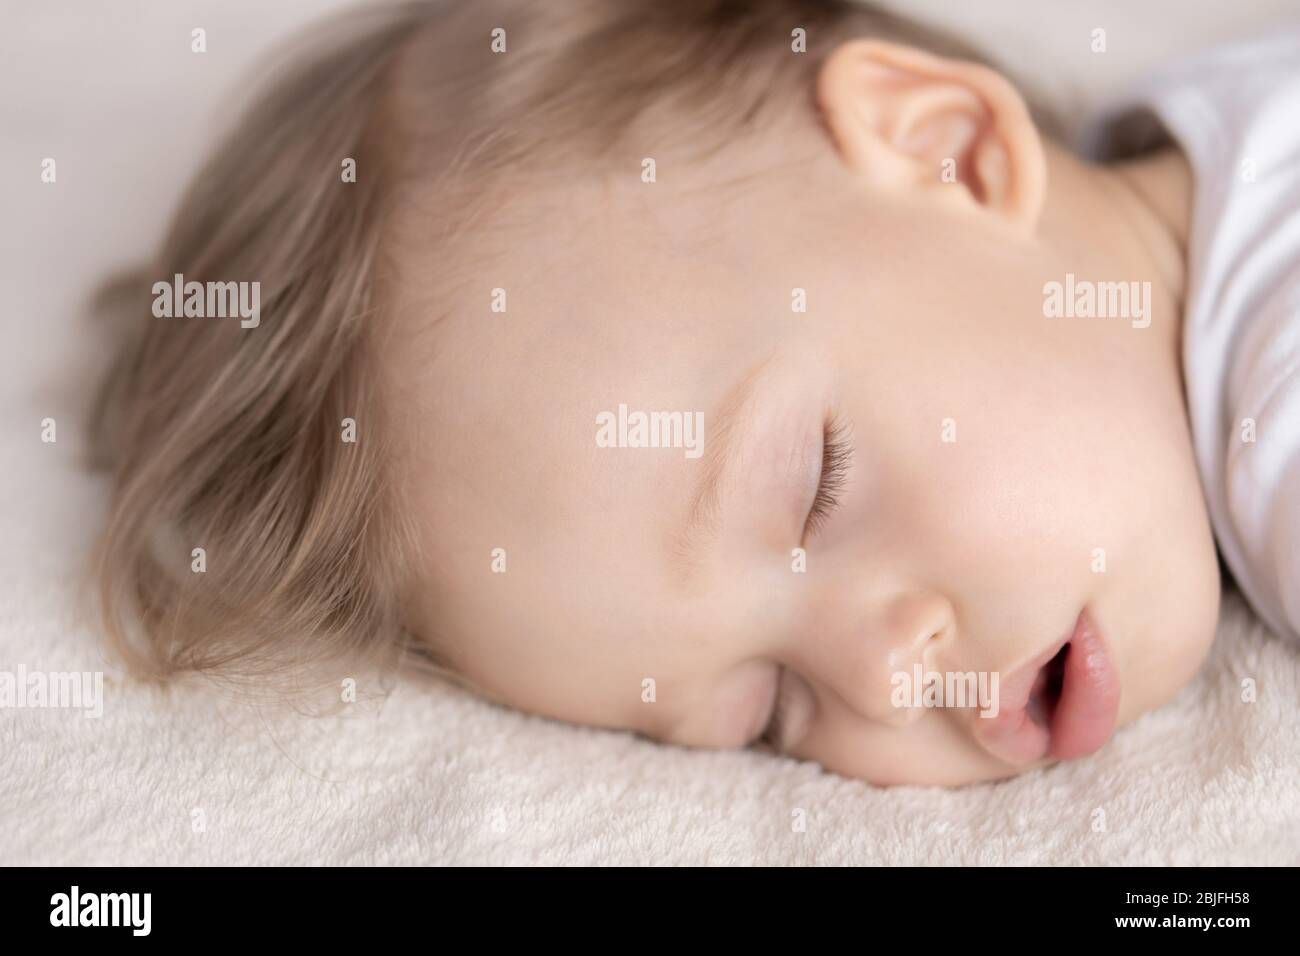 Kindheit, Schlaf, Ruhe, Familie, Lifestyle-Konzept - Nahaufnahme Porträt eines süßen kleinen Jungen von 2 Jahren in einem weißen Körper schläft auf einem beigen Bett bei Stockfoto